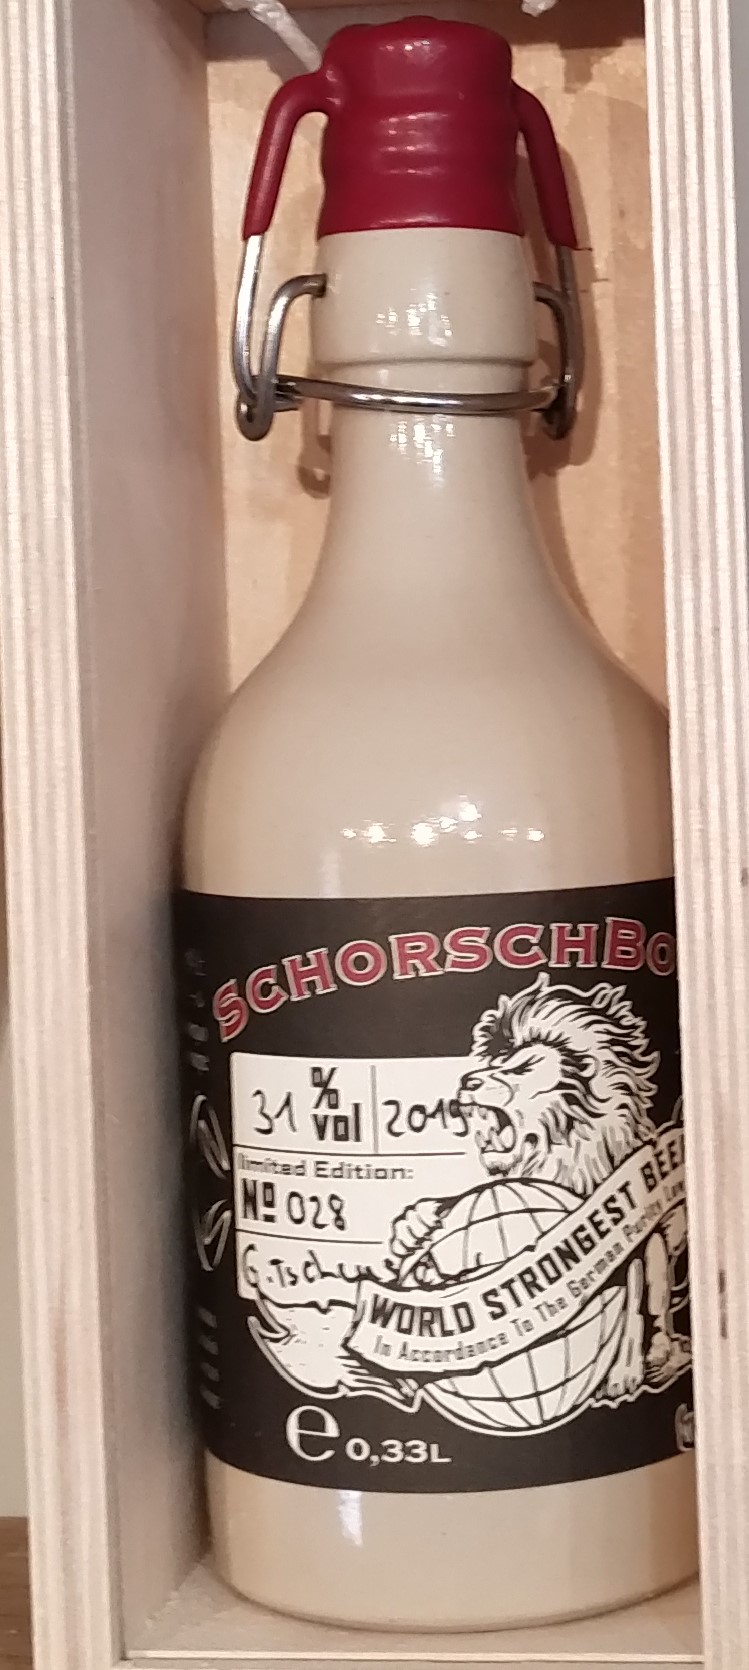 Schorschbock 31%